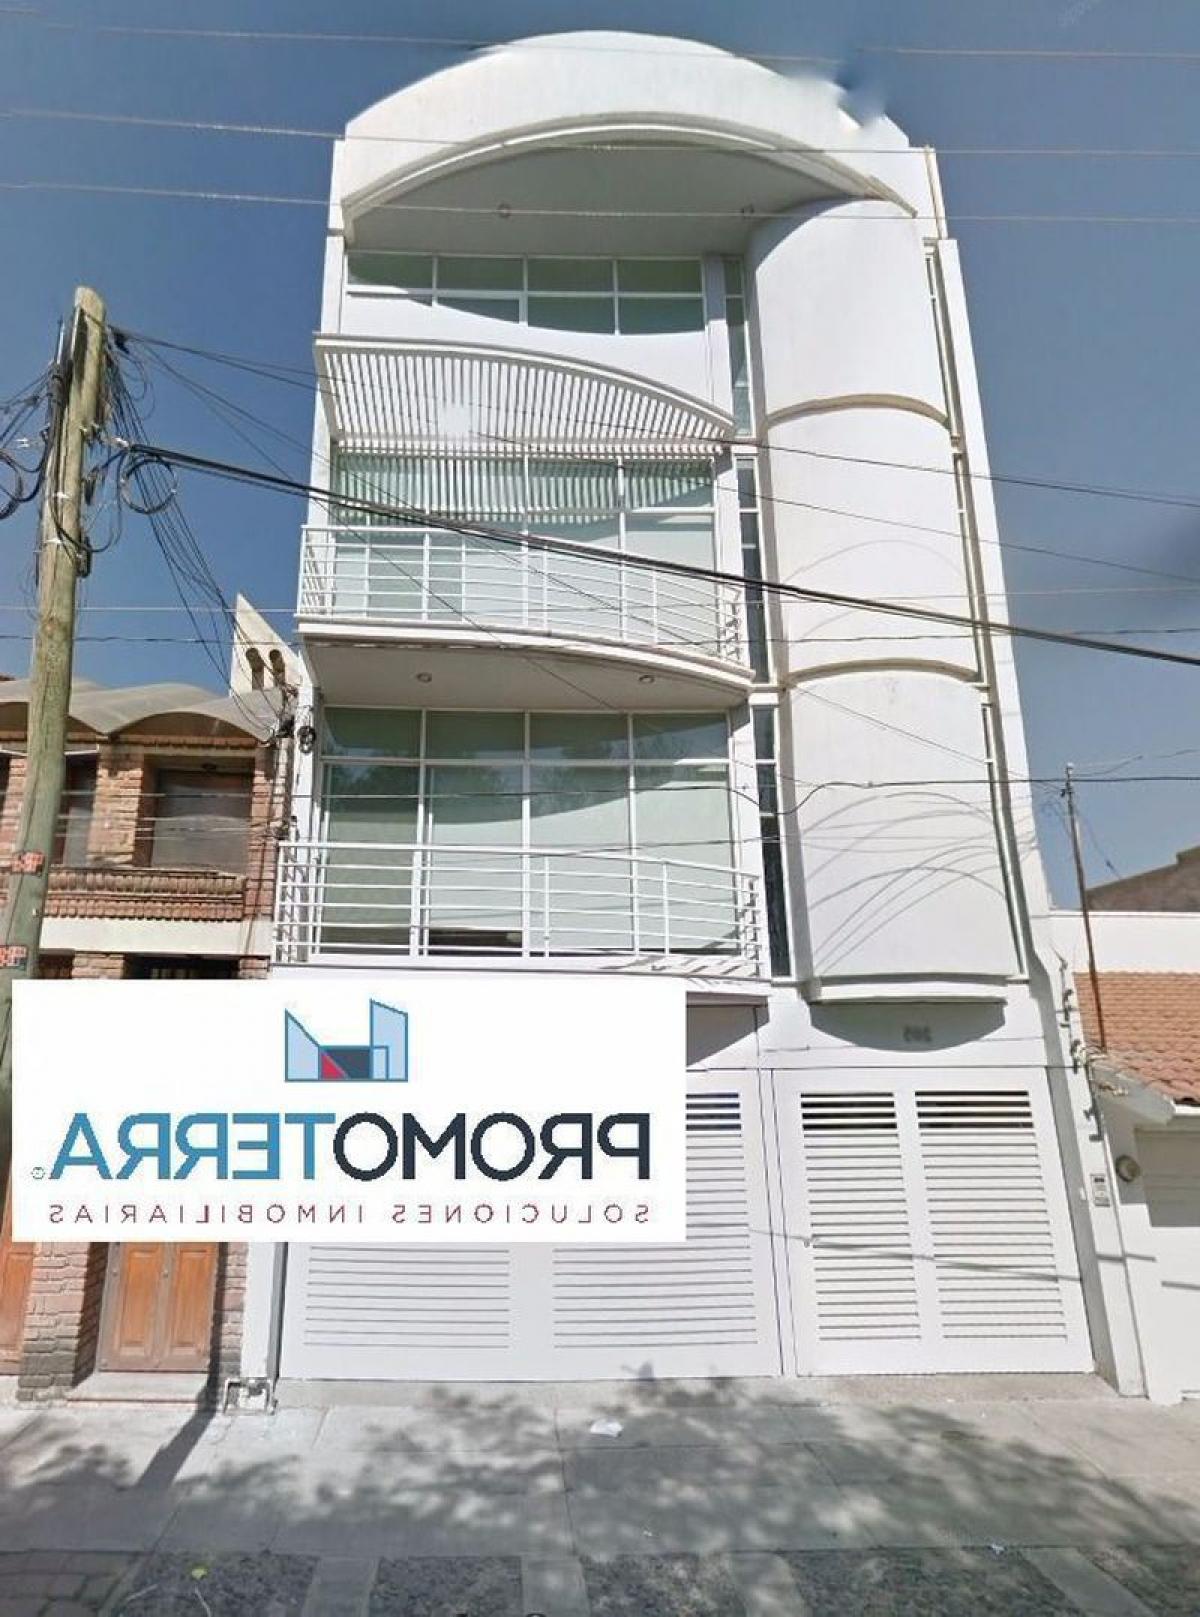 Picture of Apartment Building For Sale in Guanajuato, Guanajuato, Mexico